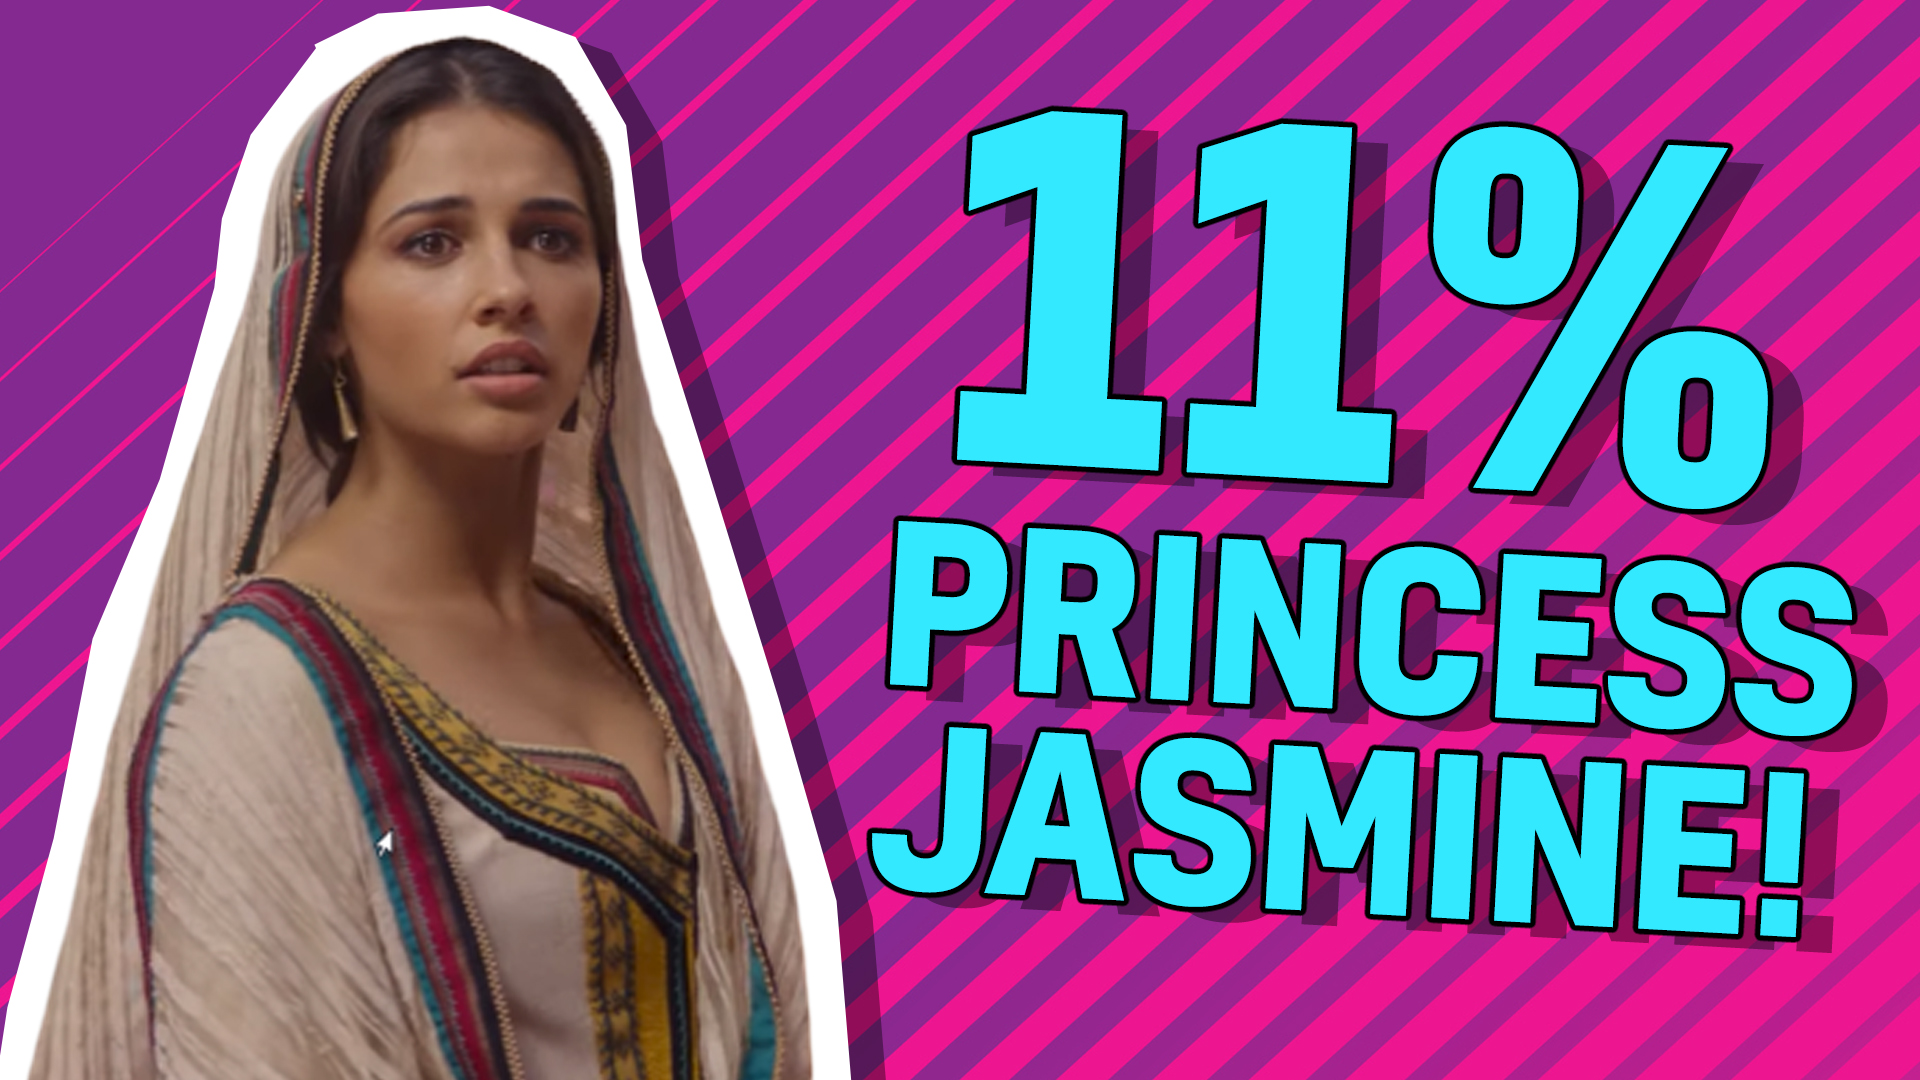 11% Princess Jasmine!